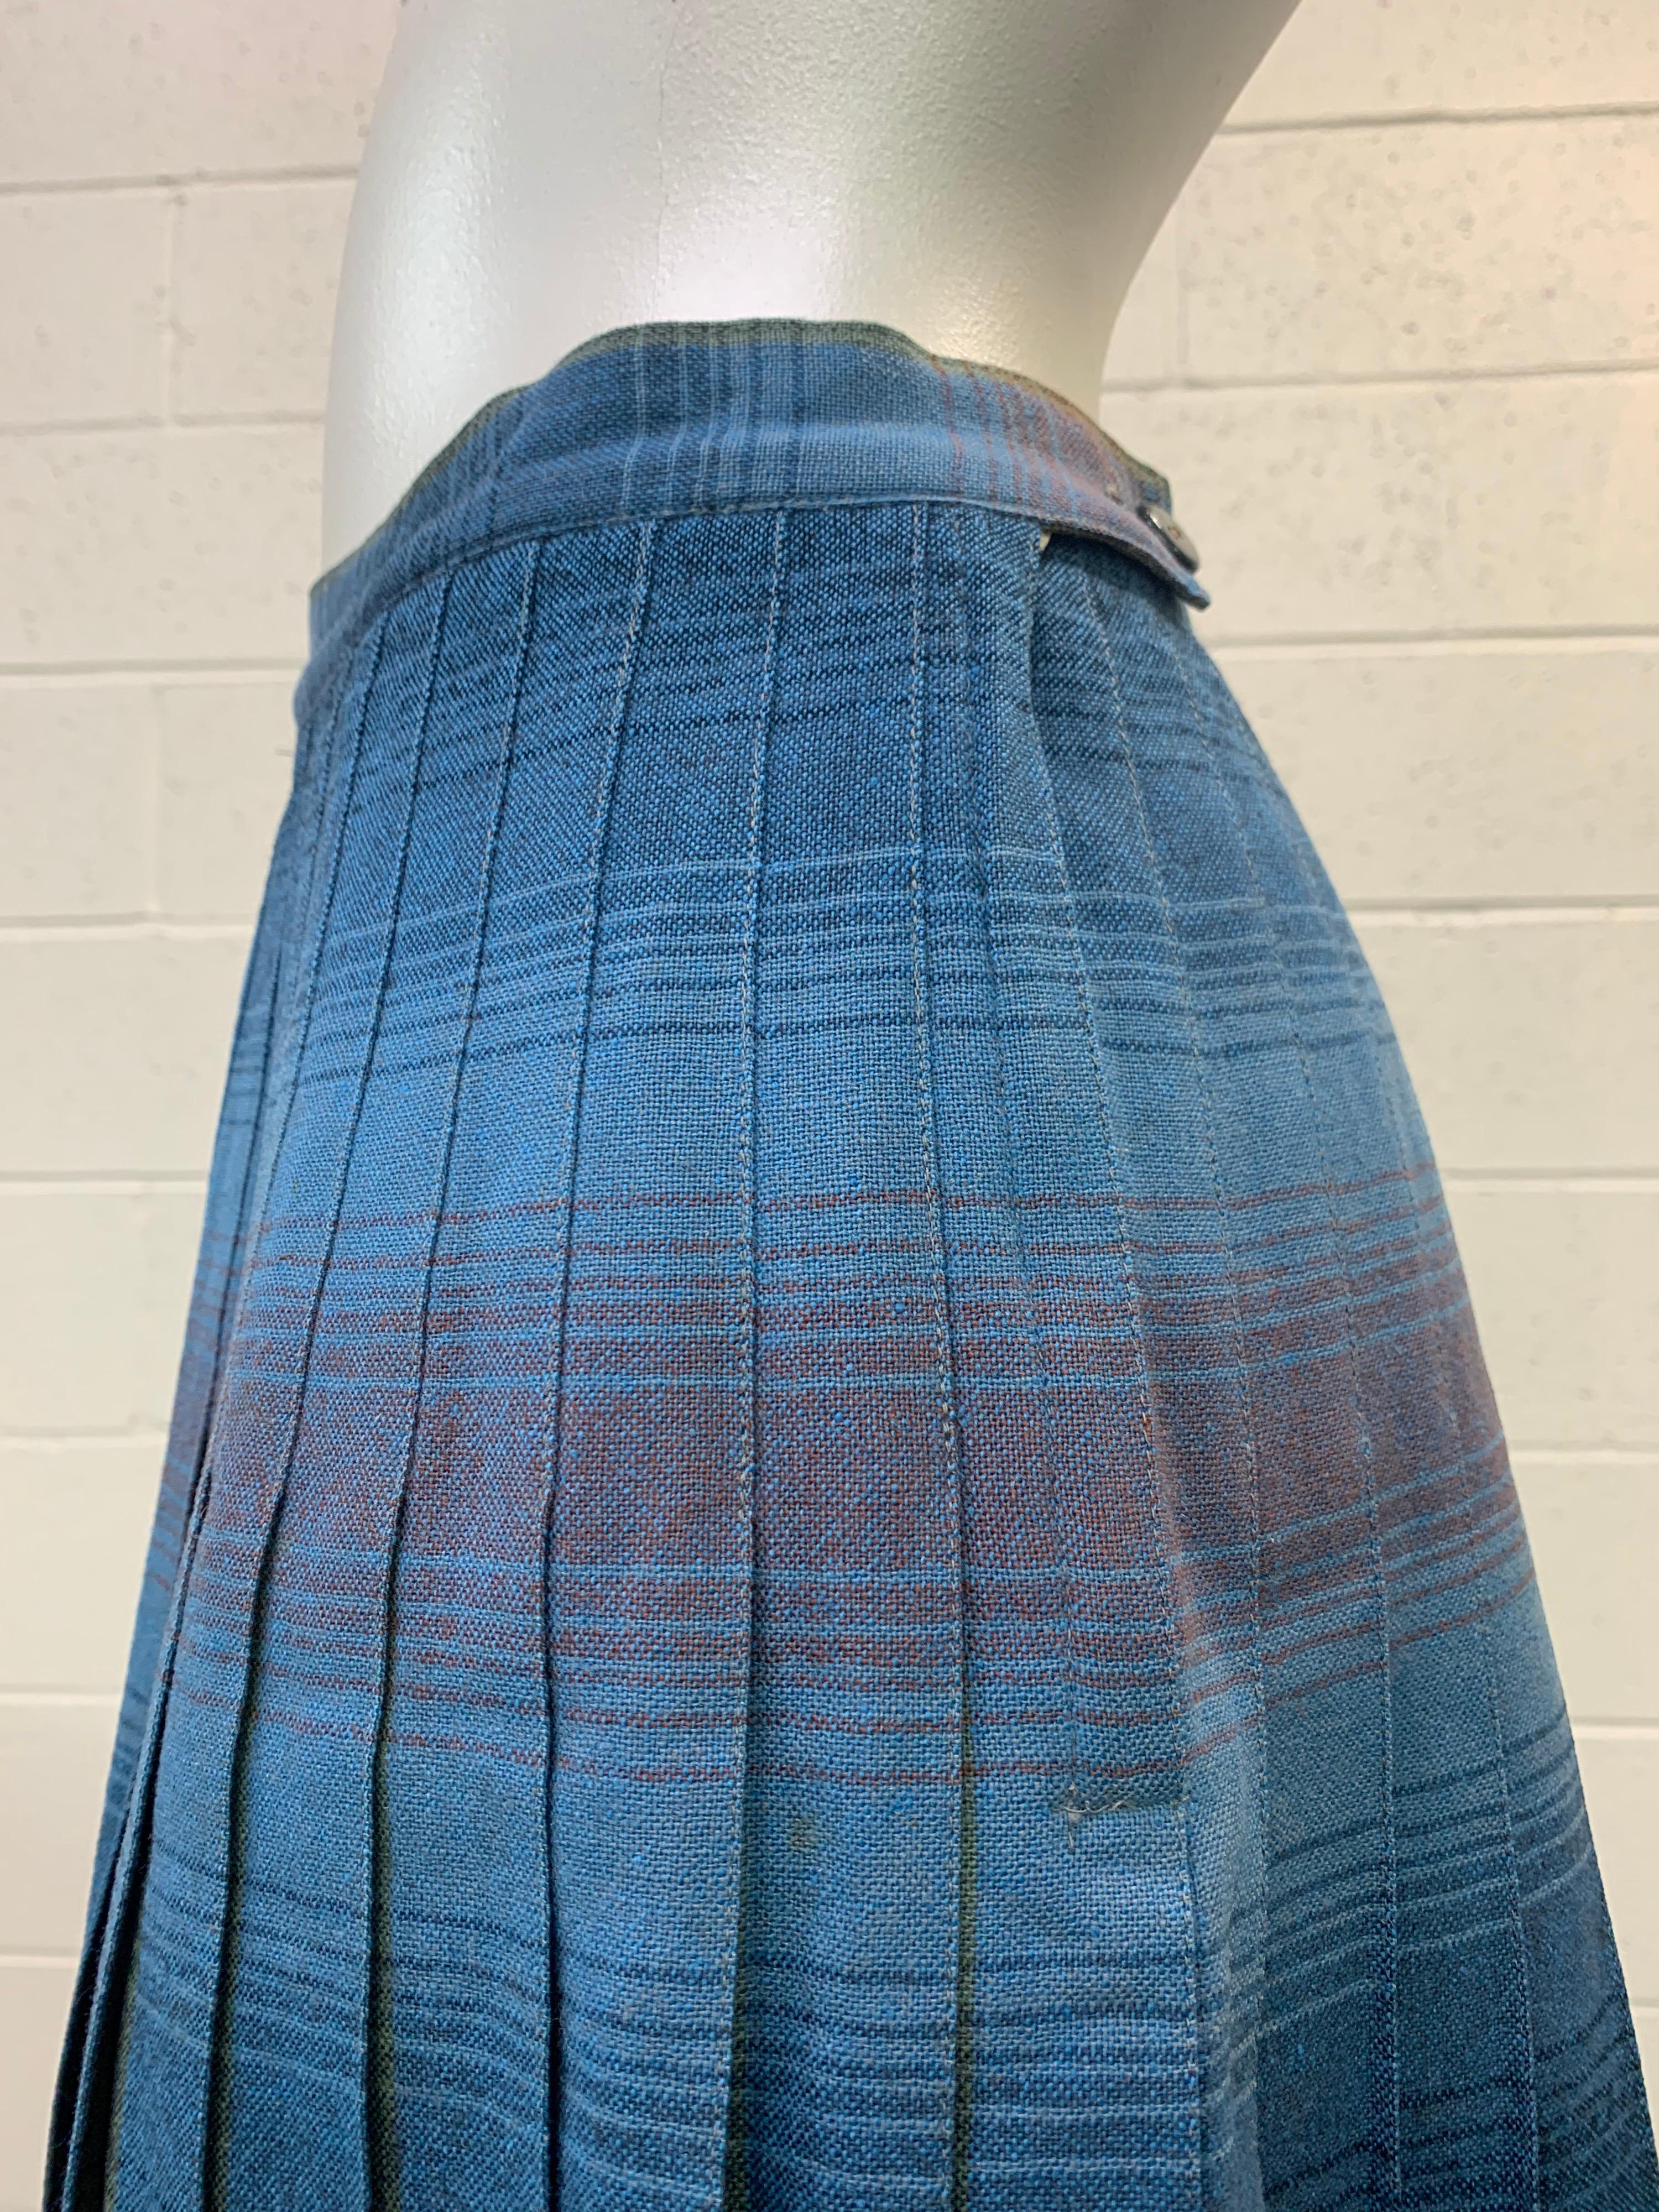 pendleton pleated skirt